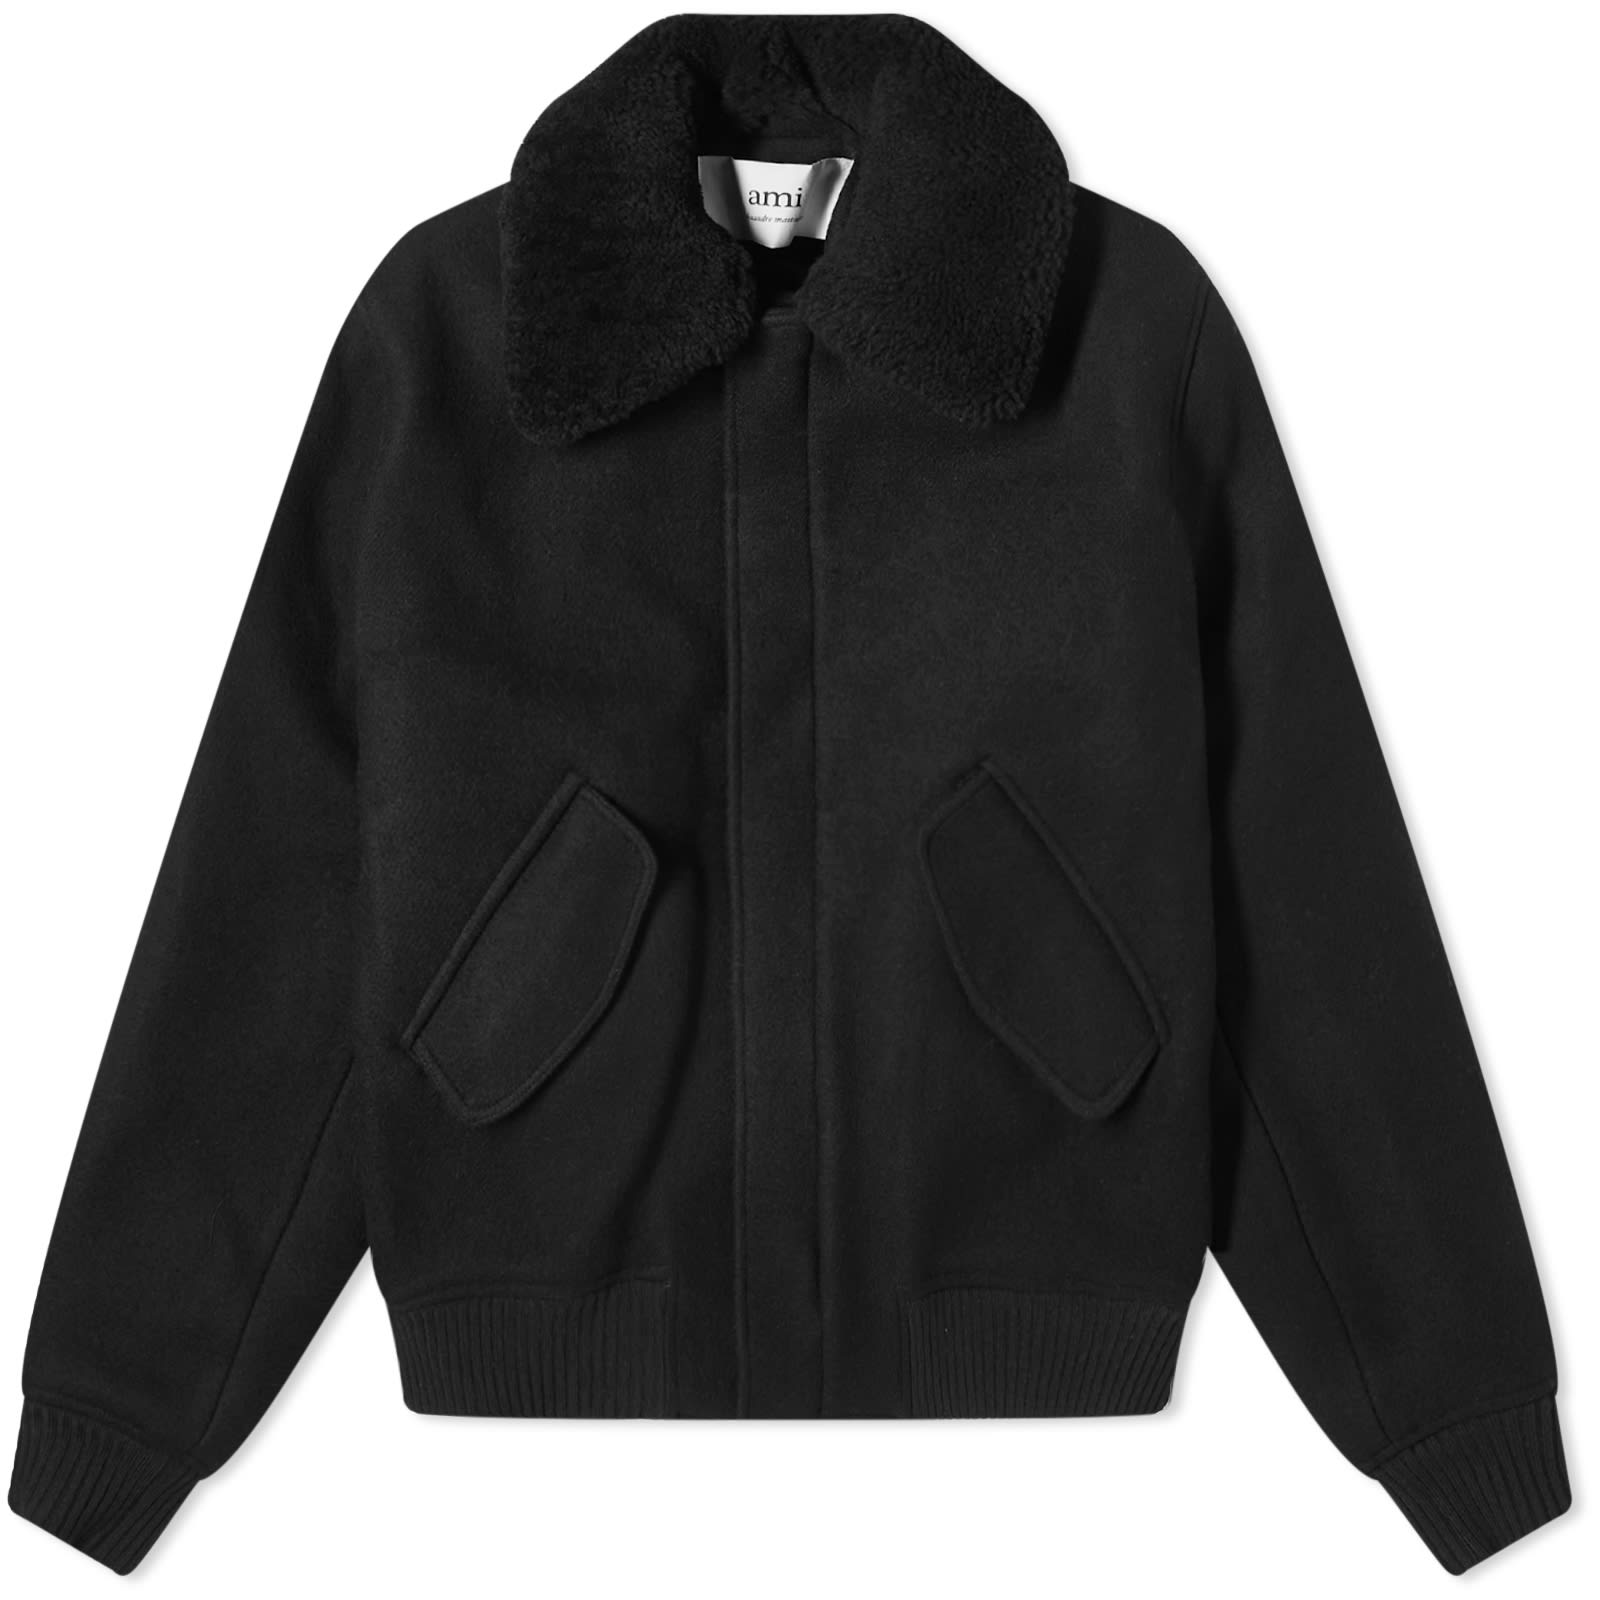 Куртка Ami Paris Shearling Collar Wool, черный оригинальная немецкая элитная куртка с розовым воротником времен второй мировой войны черная шерстяная куртка